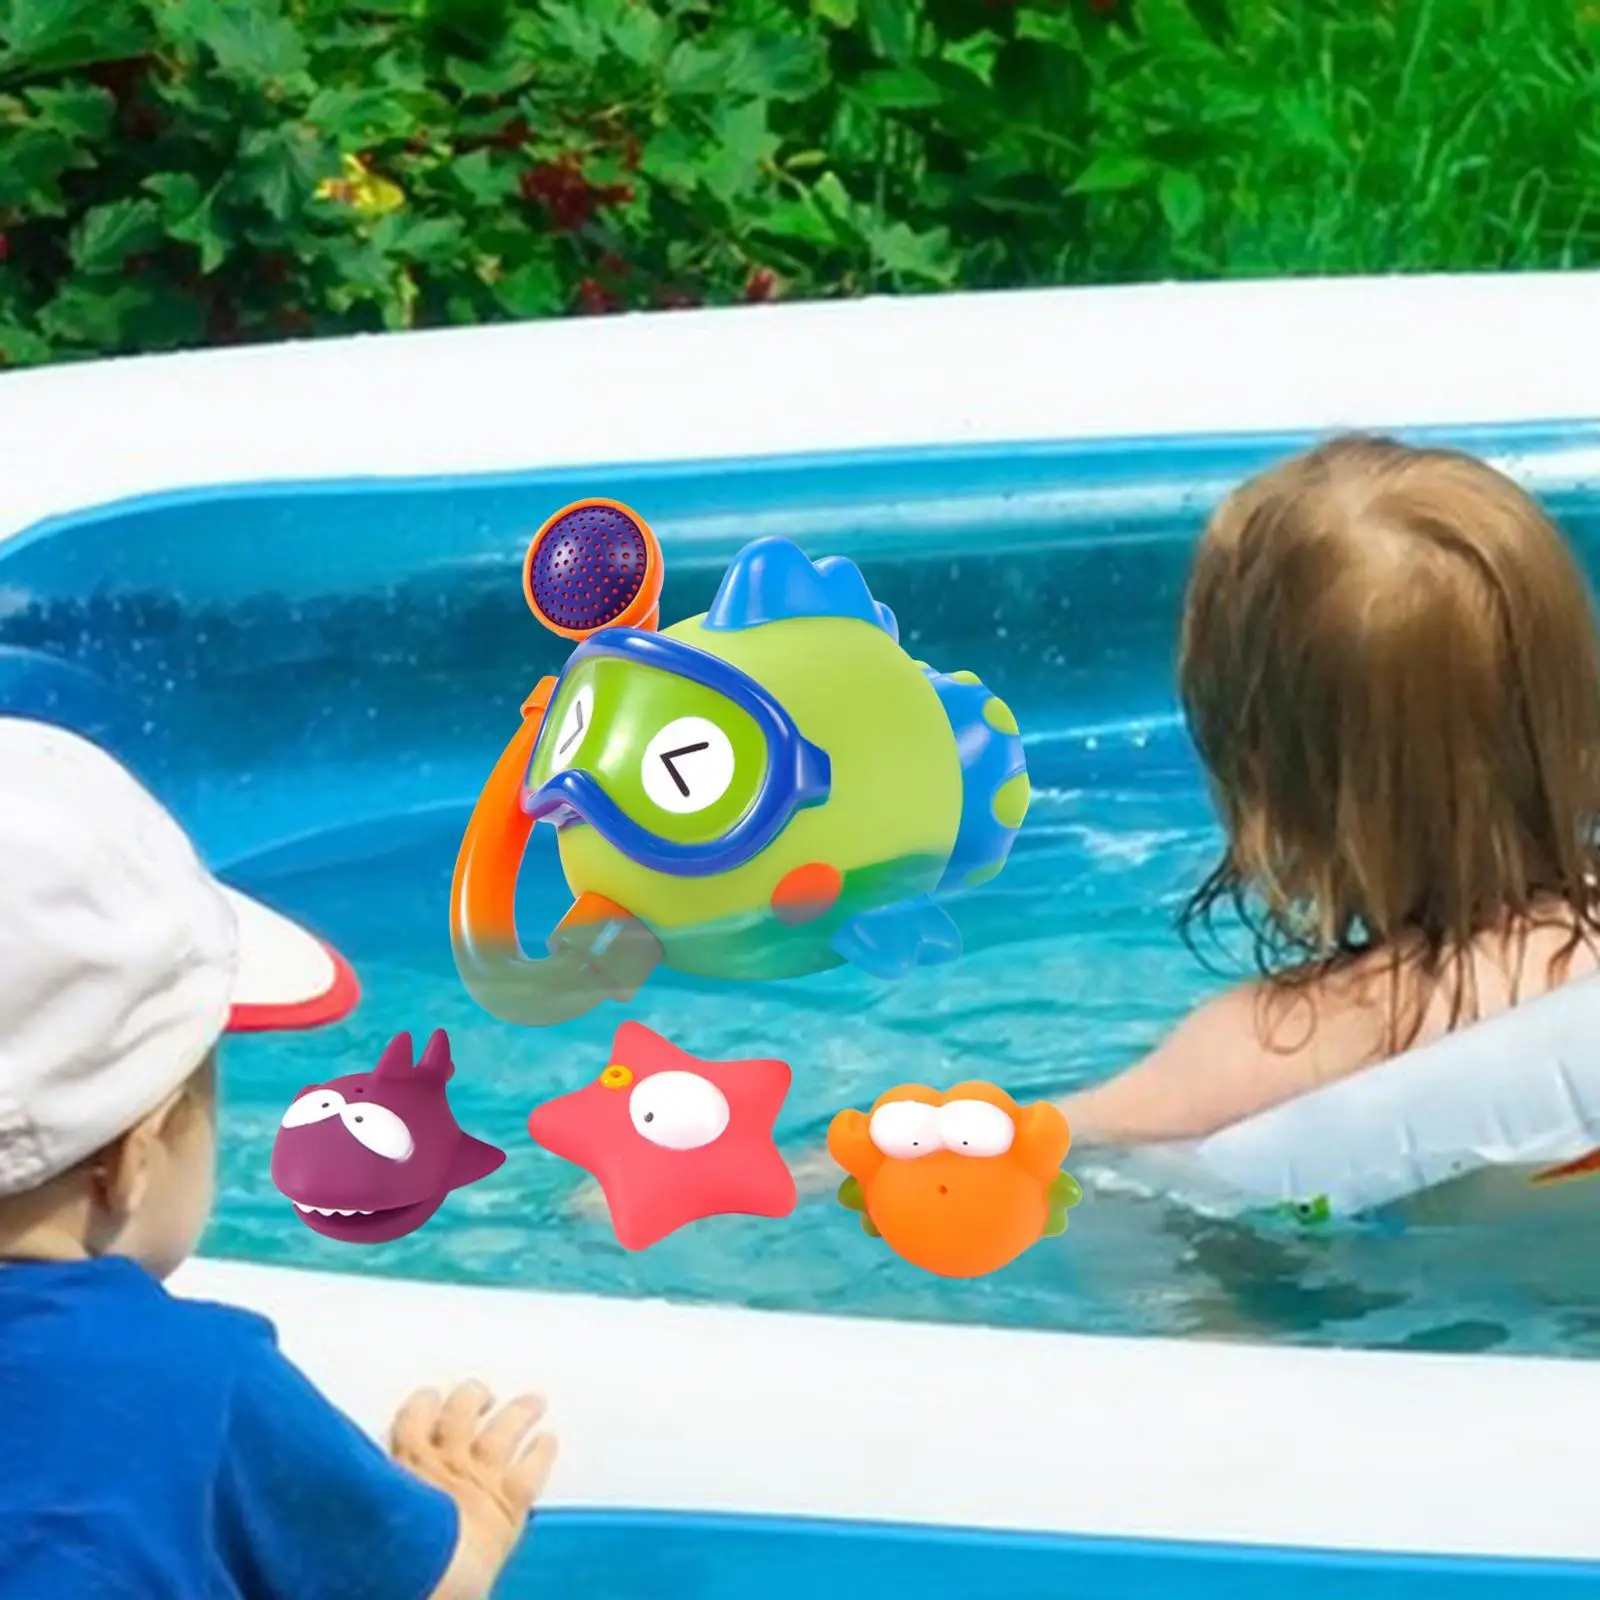 4x Fish Fountain Bath Toy Bathroom Water Playing Bath Ocean Sea Animal Bathtub Toys for Ages 1-5 Boys Kids Great Gifts